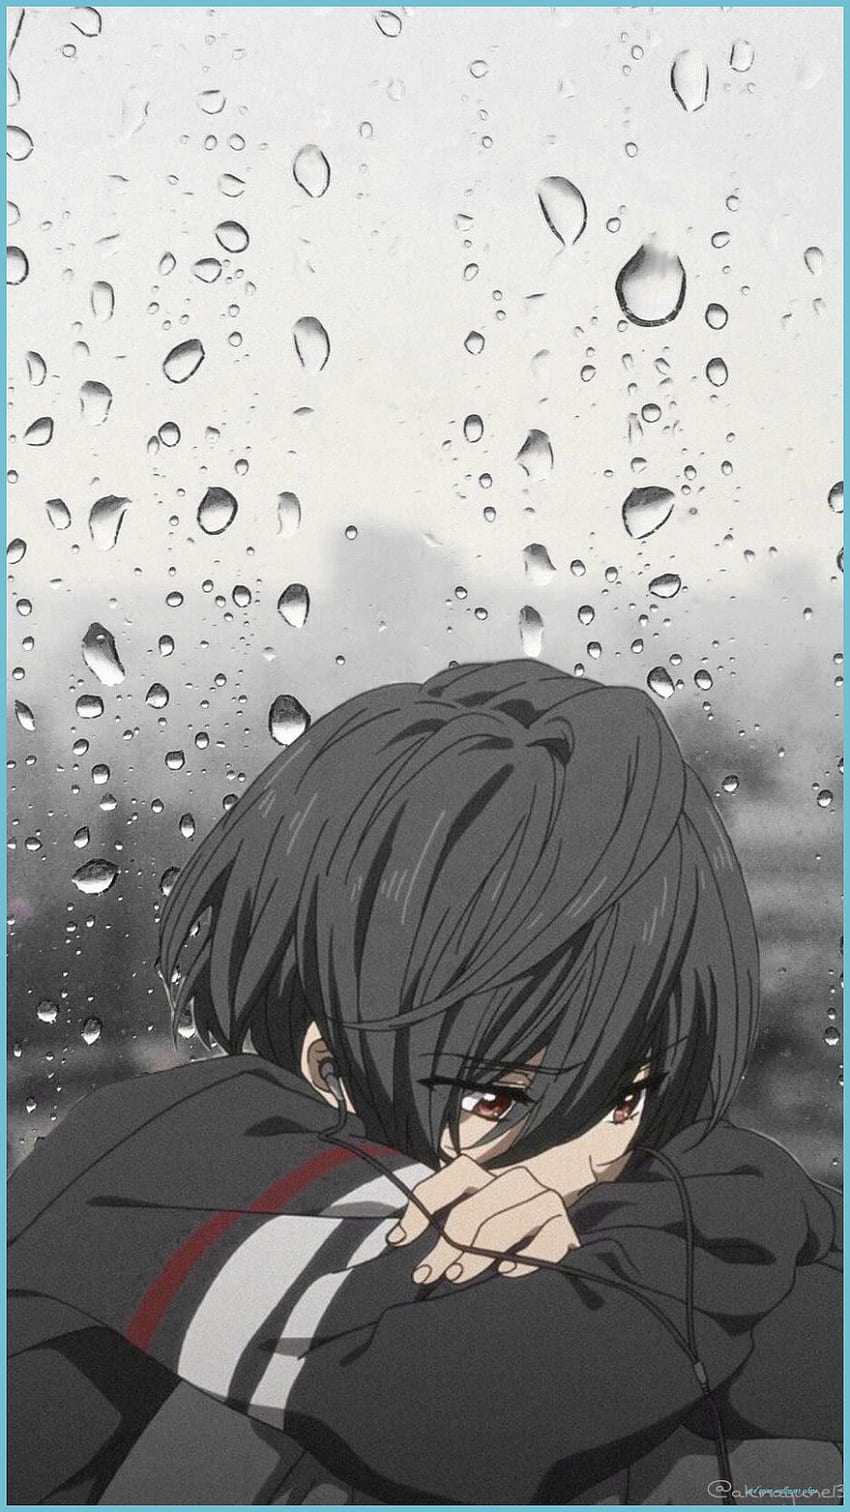 Sad Anime Wallpapers on WallpaperDog